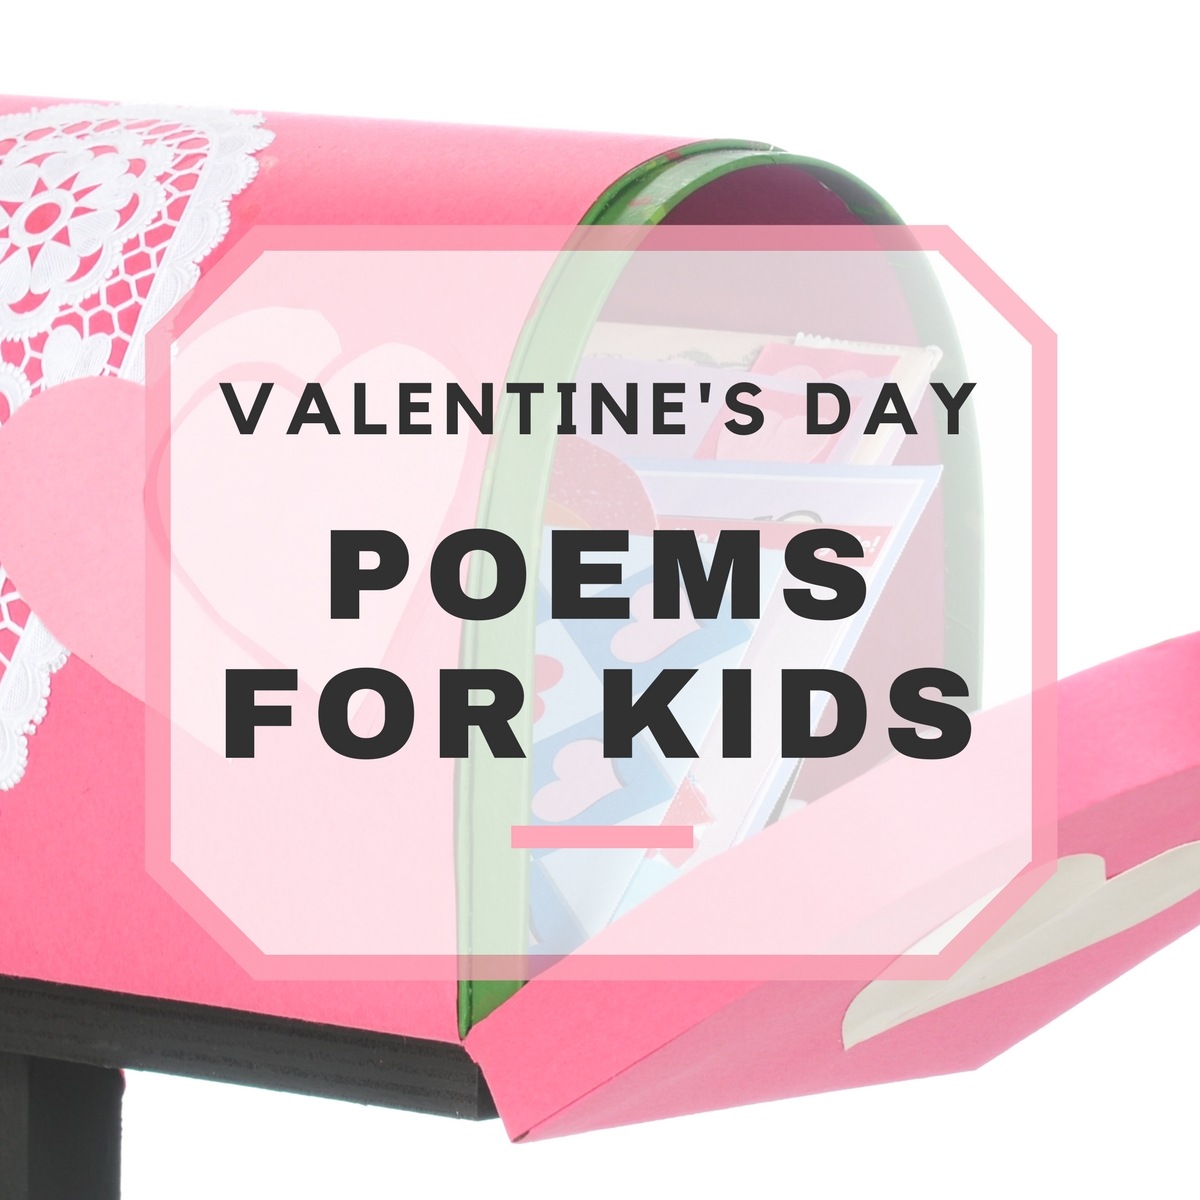 Valentines Day For Kids Poems | Kids Matttroy1200 x 1200